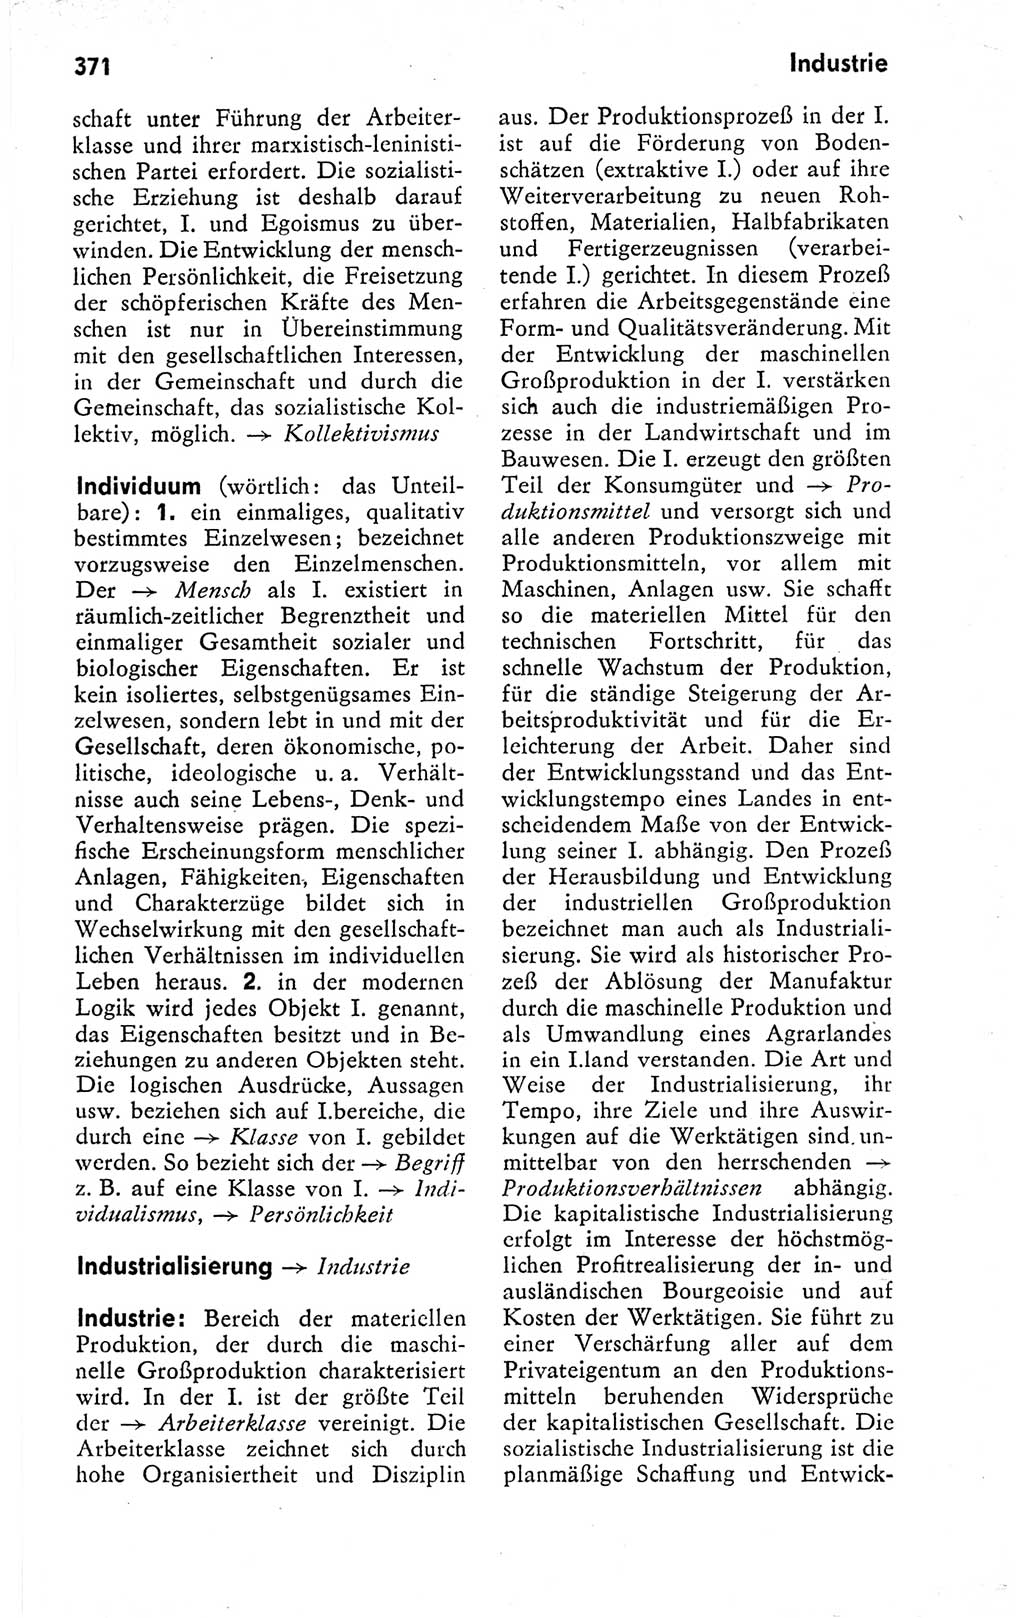 Kleines politisches Wörterbuch [Deutsche Demokratische Republik (DDR)] 1978, Seite 371 (Kl. pol. Wb. DDR 1978, S. 371)